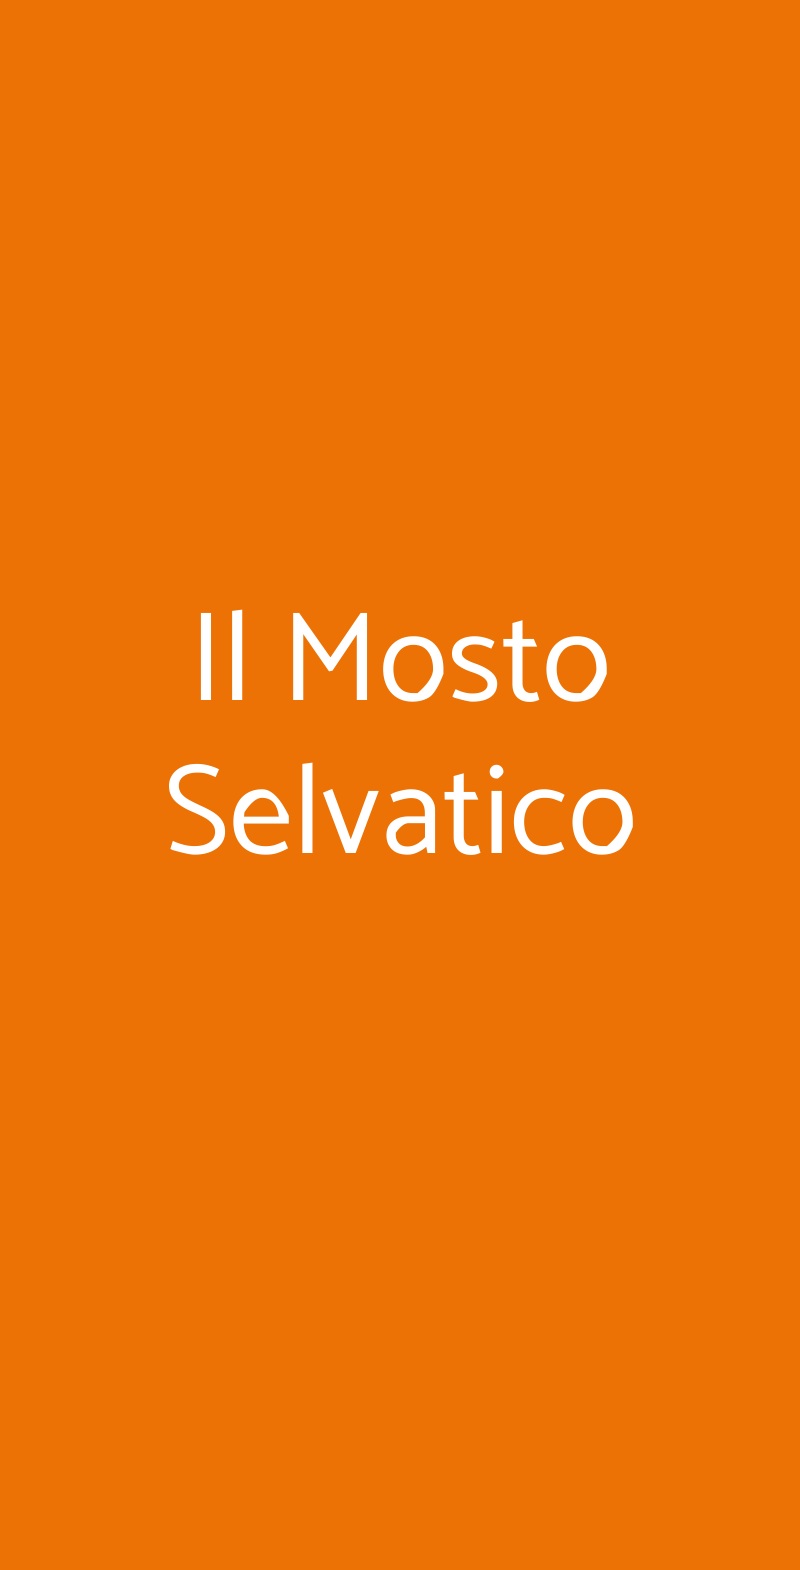 Il Mosto Selvatico Milano menù 1 pagina